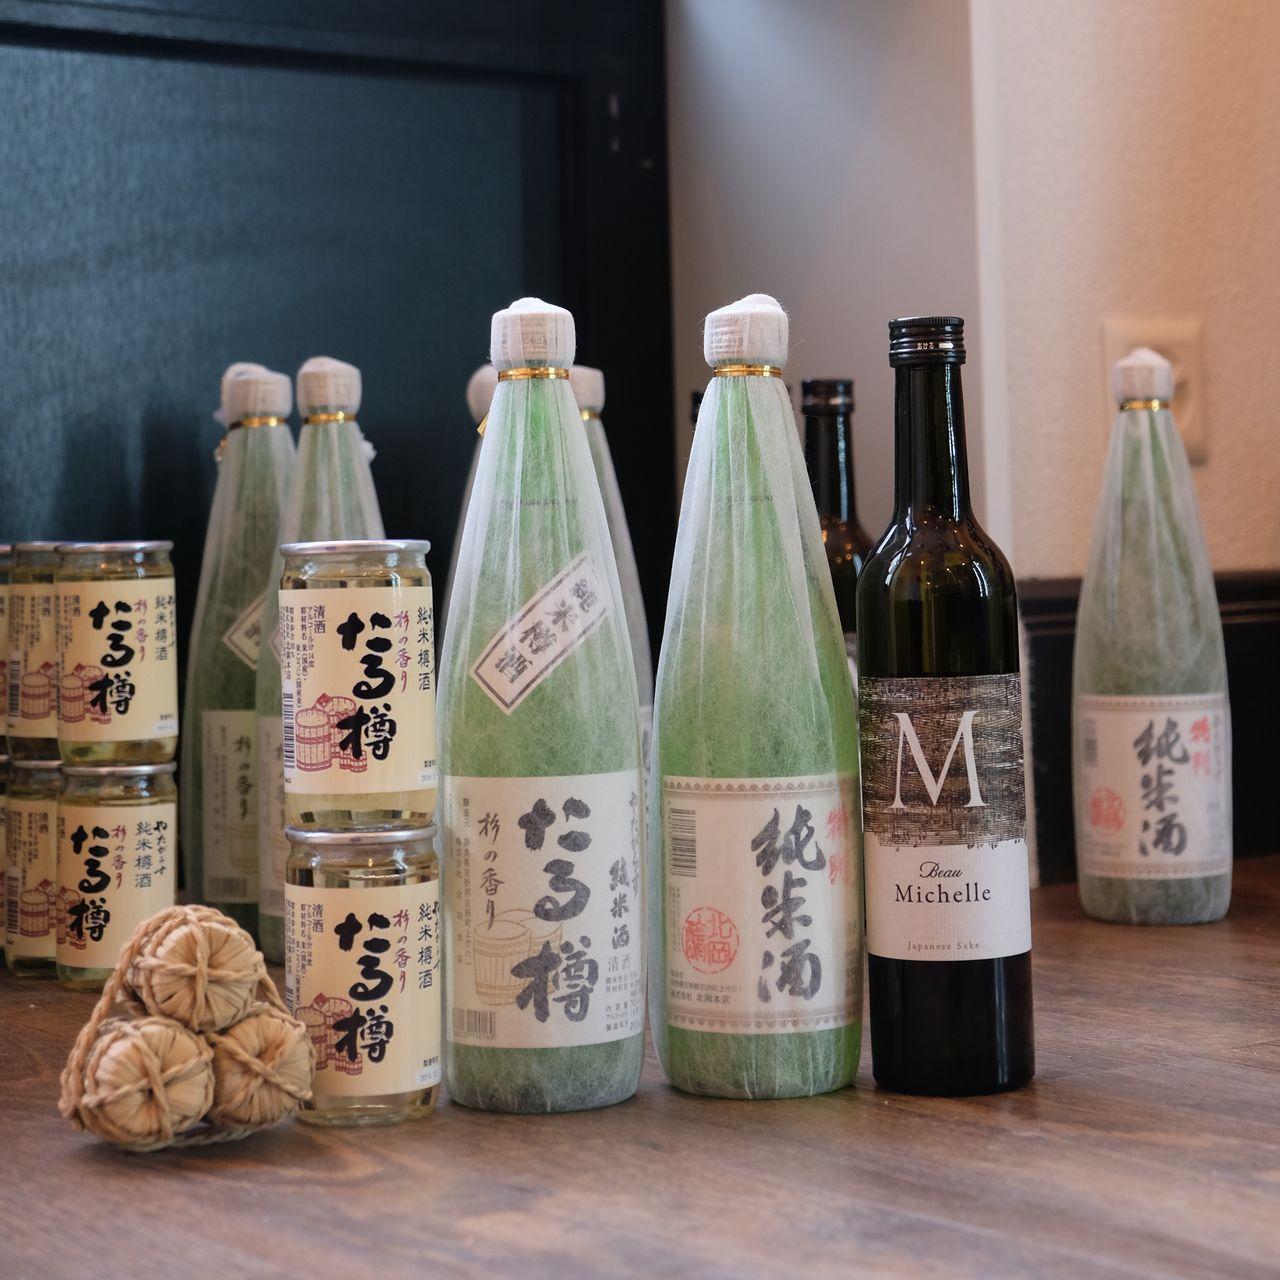 sake bottles on the floor